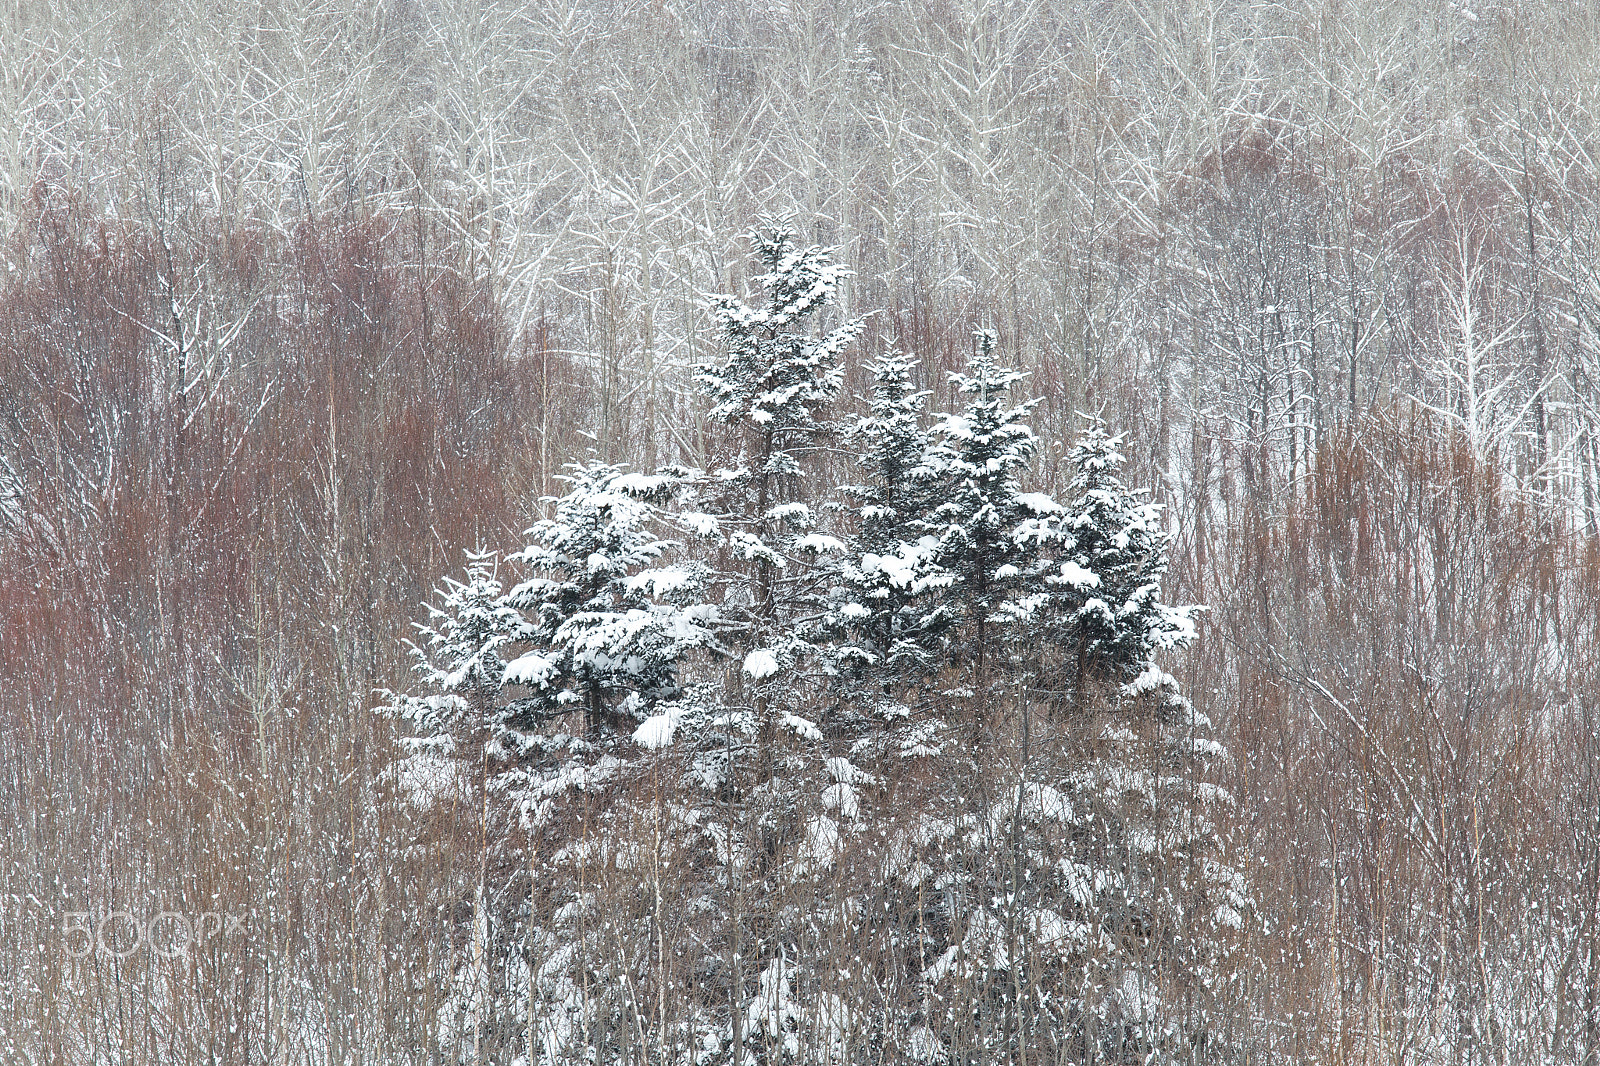 Canon EOS 6D sample photo. Winter festival photography